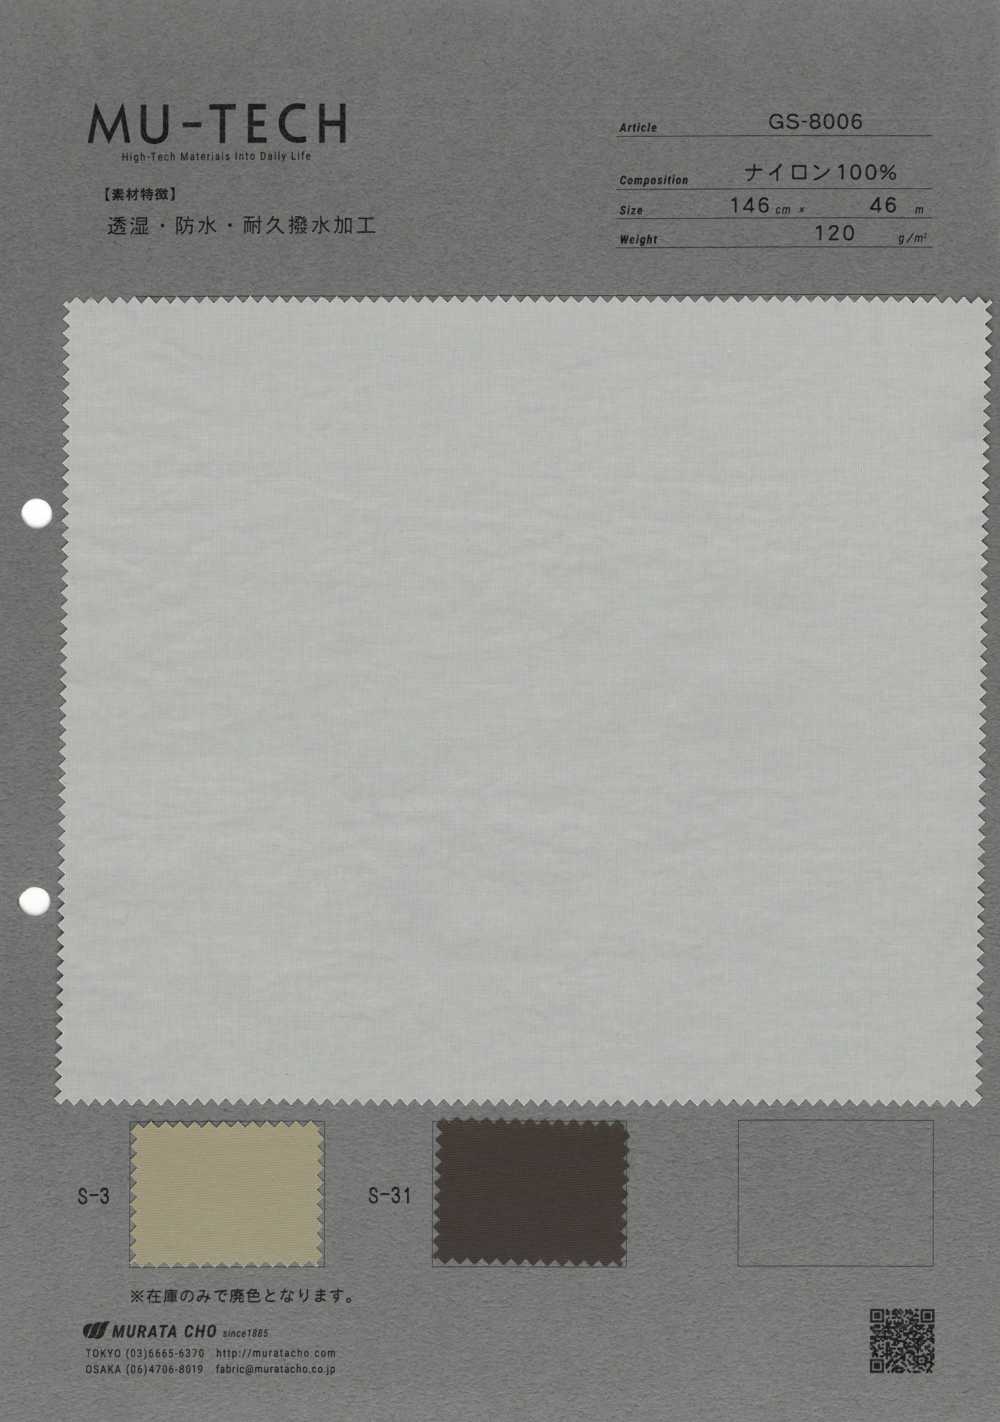 GS-8006 Atmungsaktives, Wasserdichtes, Dauerhaft Wasserabweisendes Nylon-Taft-Finish[Textilgewebe] Muratacho